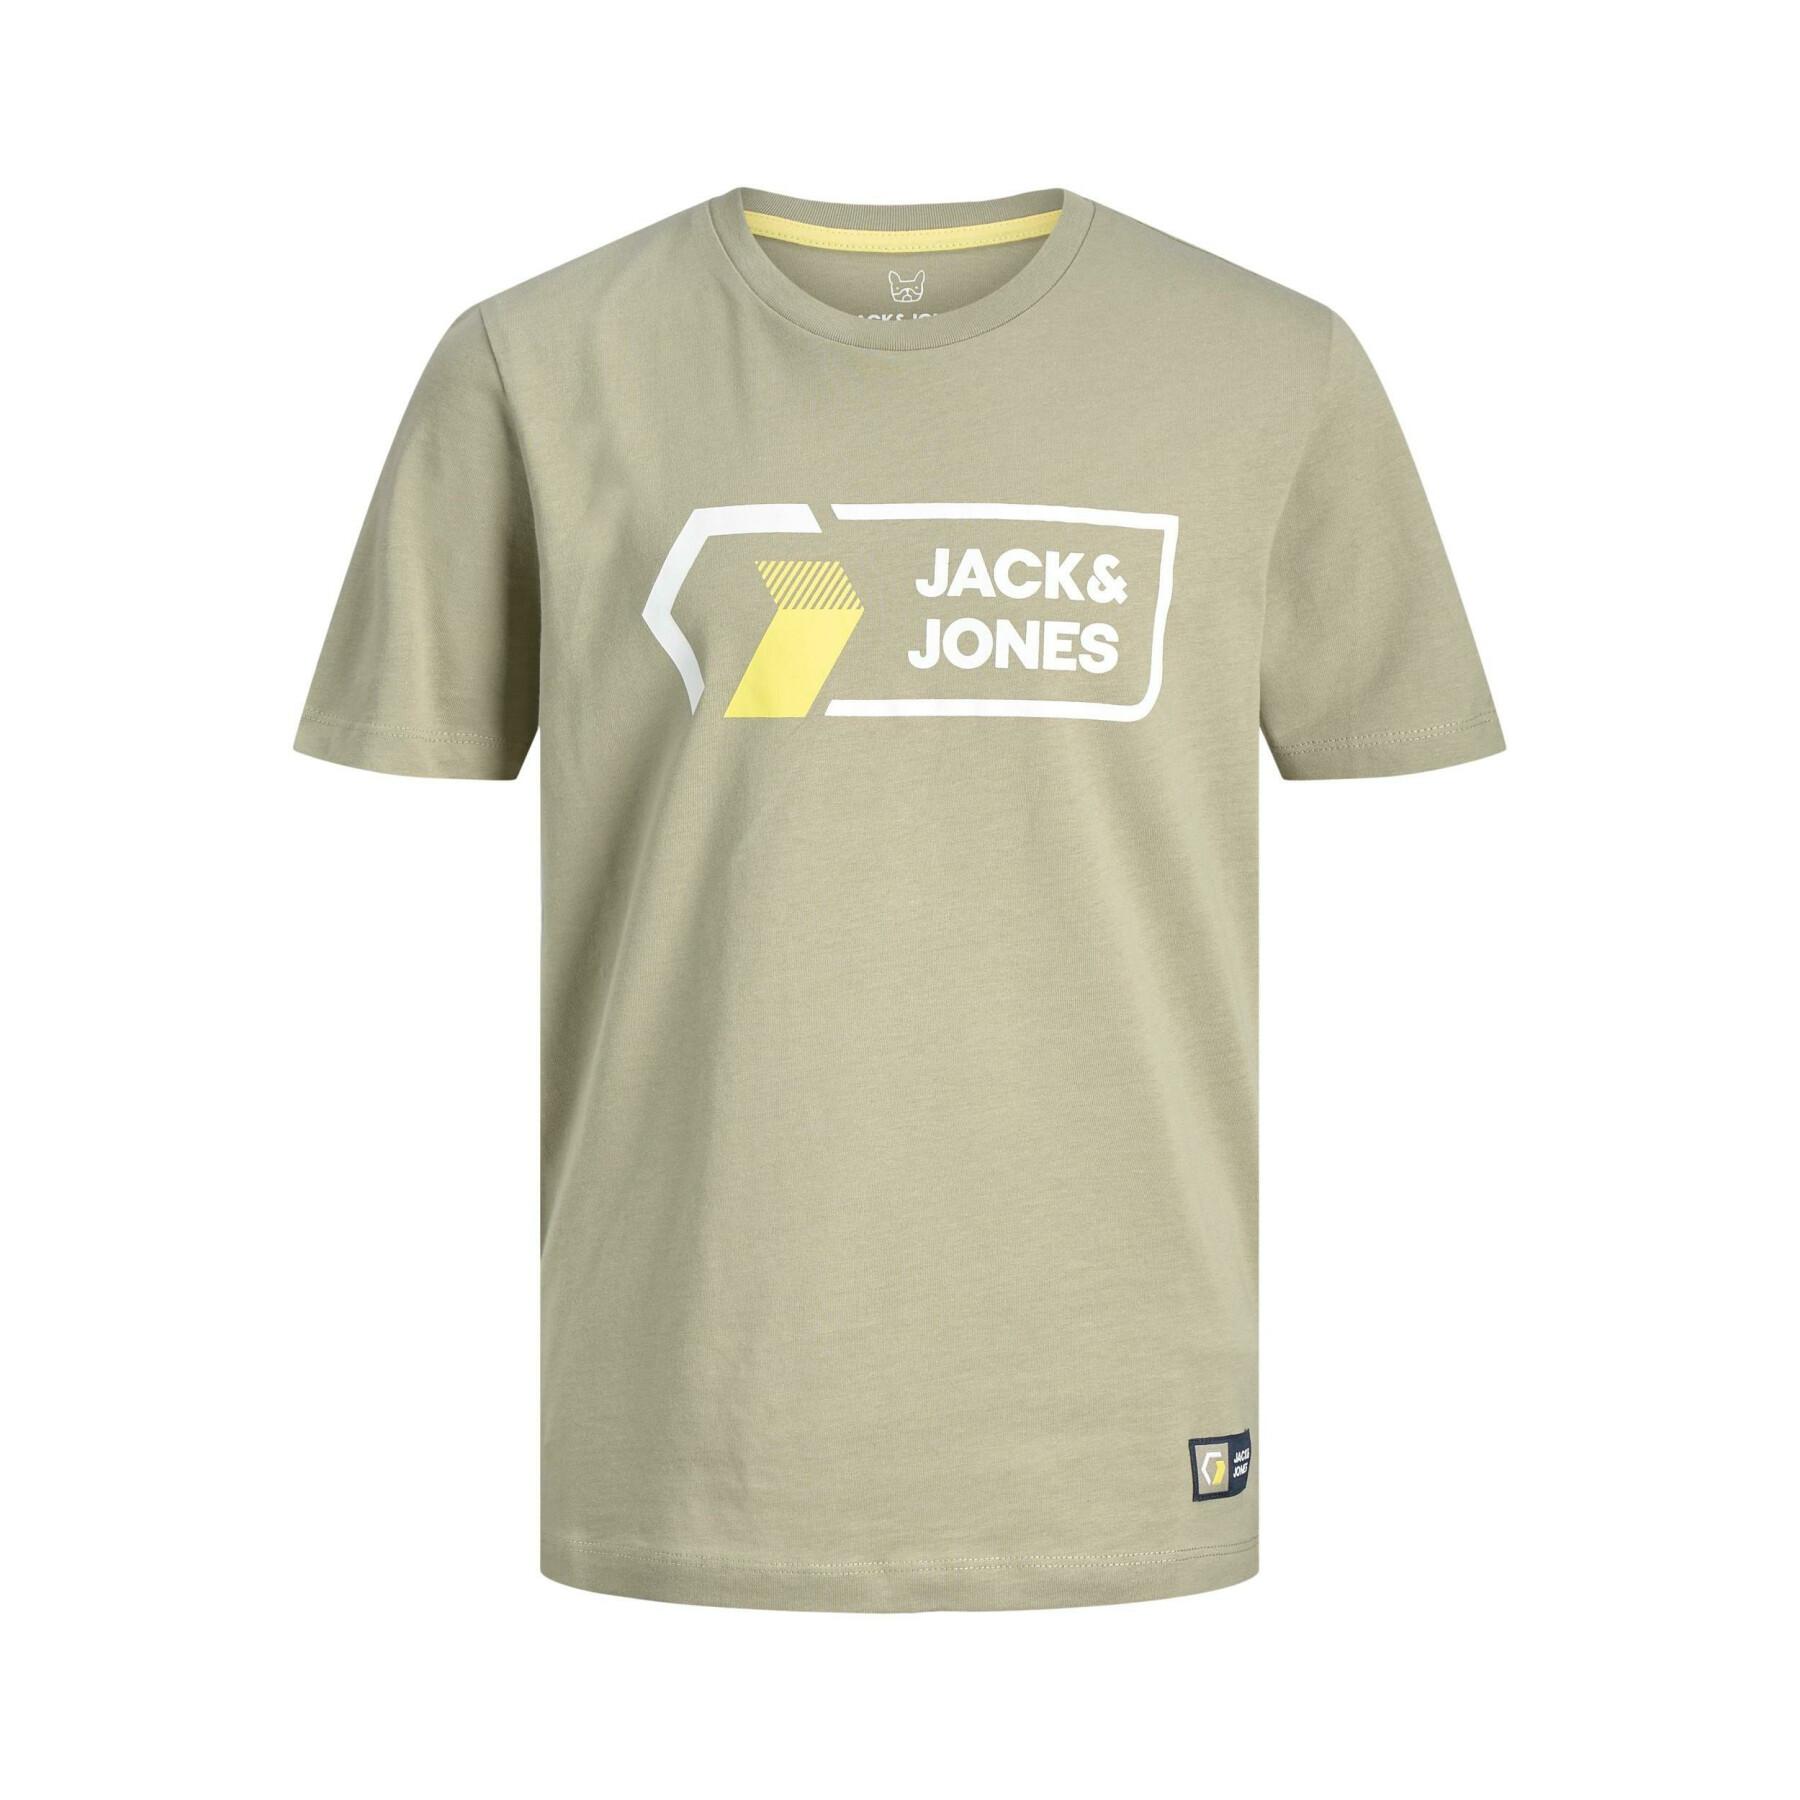 T-shirt de criança Jack & Jones Logan